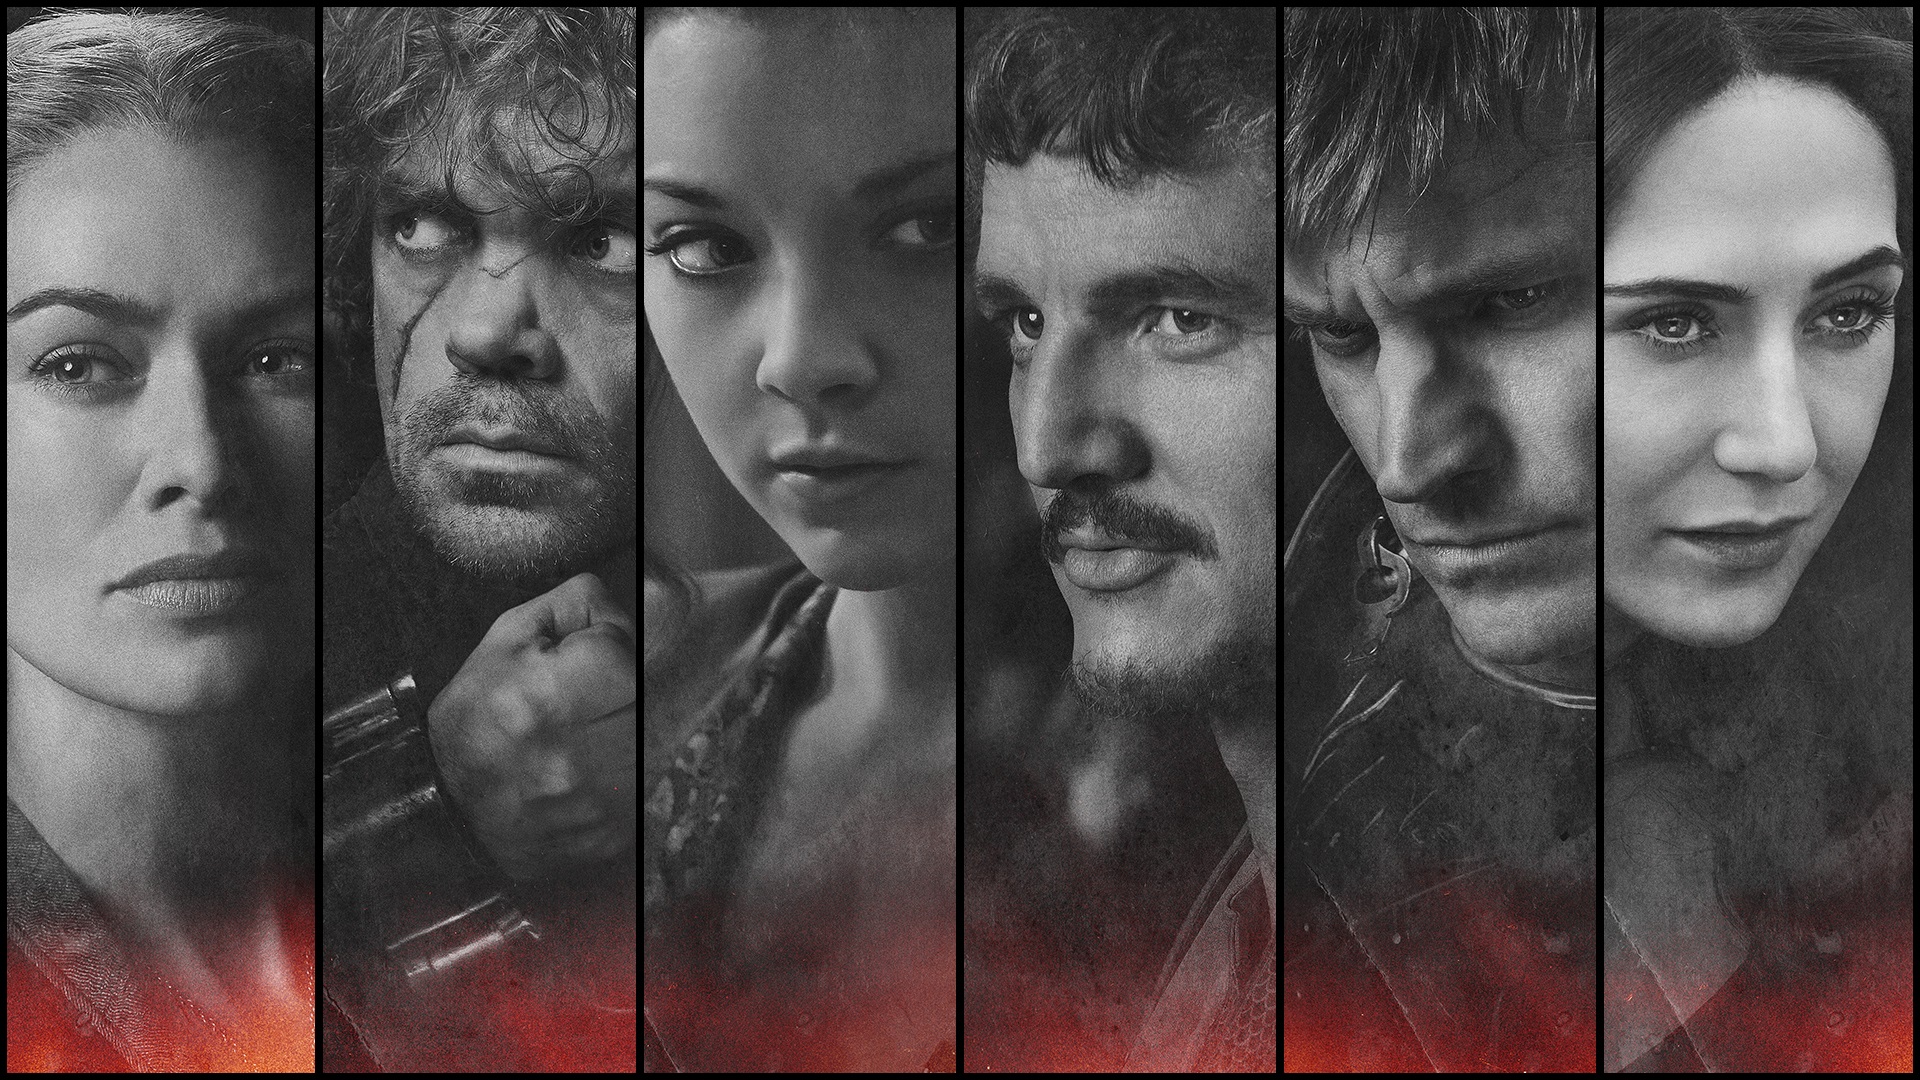 Game of Thrones cast  Game of thrones cast, Game of throne actors, Game of  thrones poster